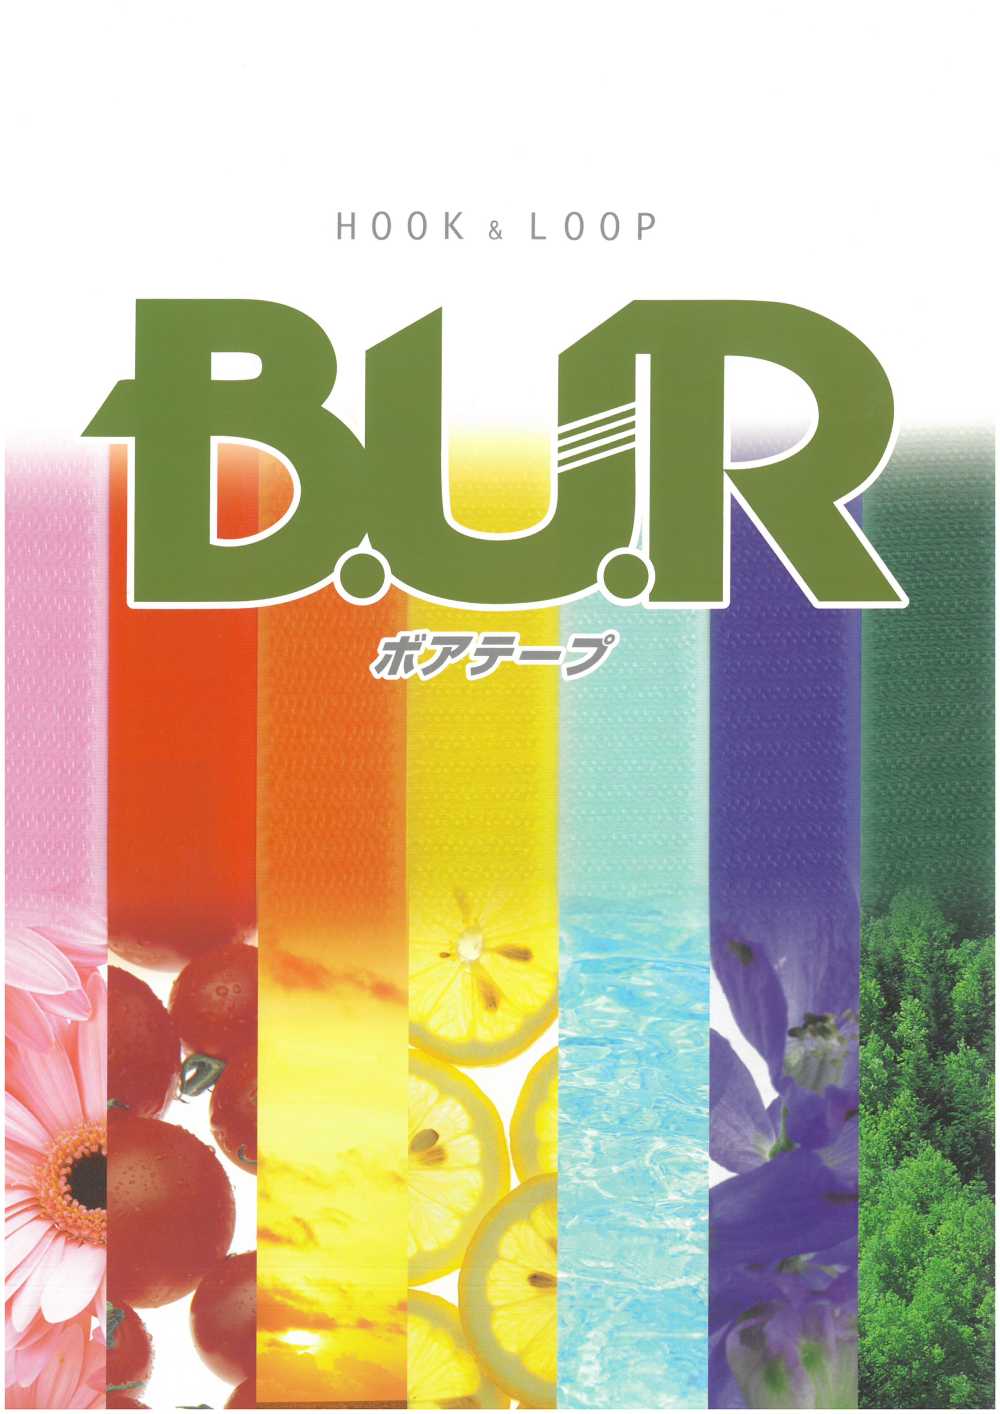 RBL Boa魔術貼粘扣B 面（環型）由尼龍製成，橡膠粘合型[拉鍊] B.U.R.